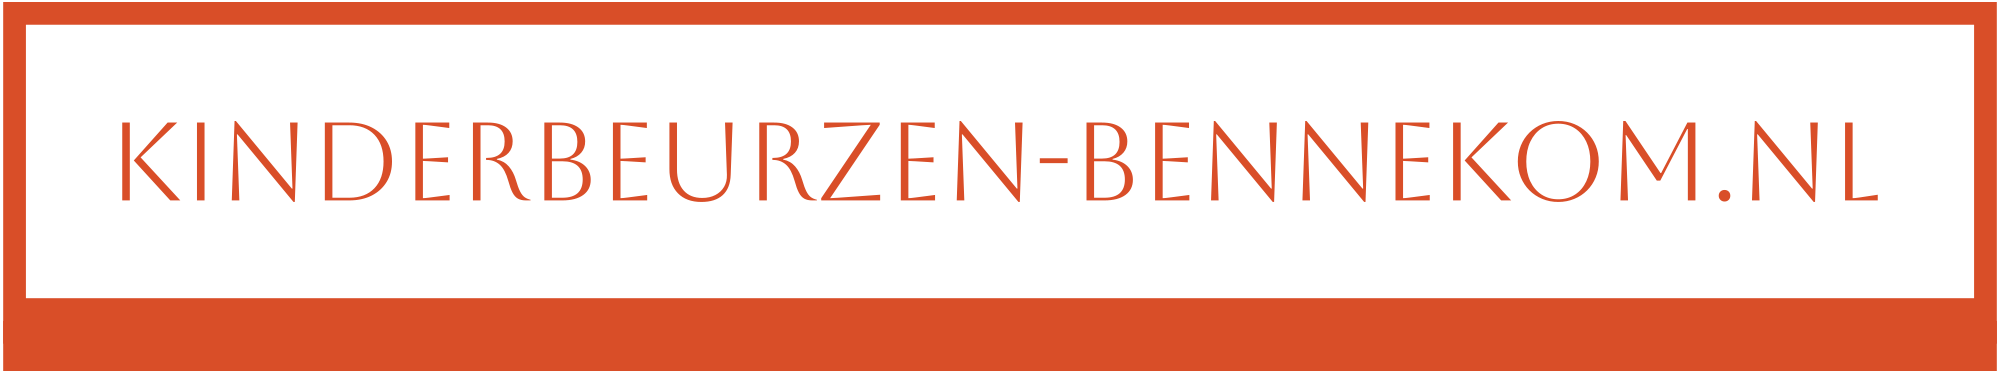 kinderbeurzen-bennekomnl-high-resolution-logo-transparent